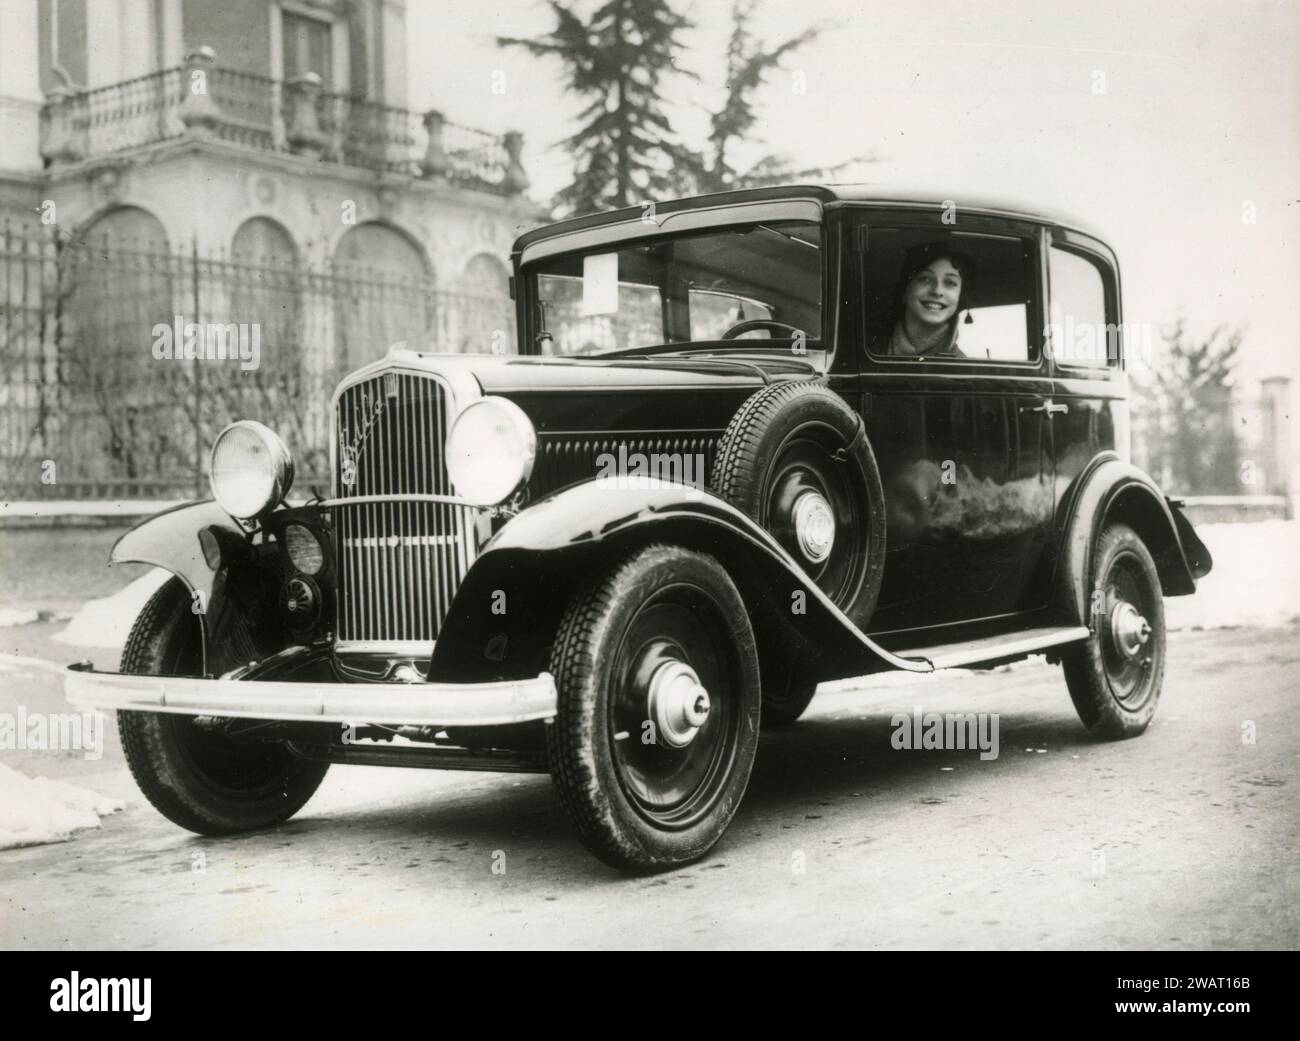 FIAT 508 Balilla car, Italy 1930s Stock Photo